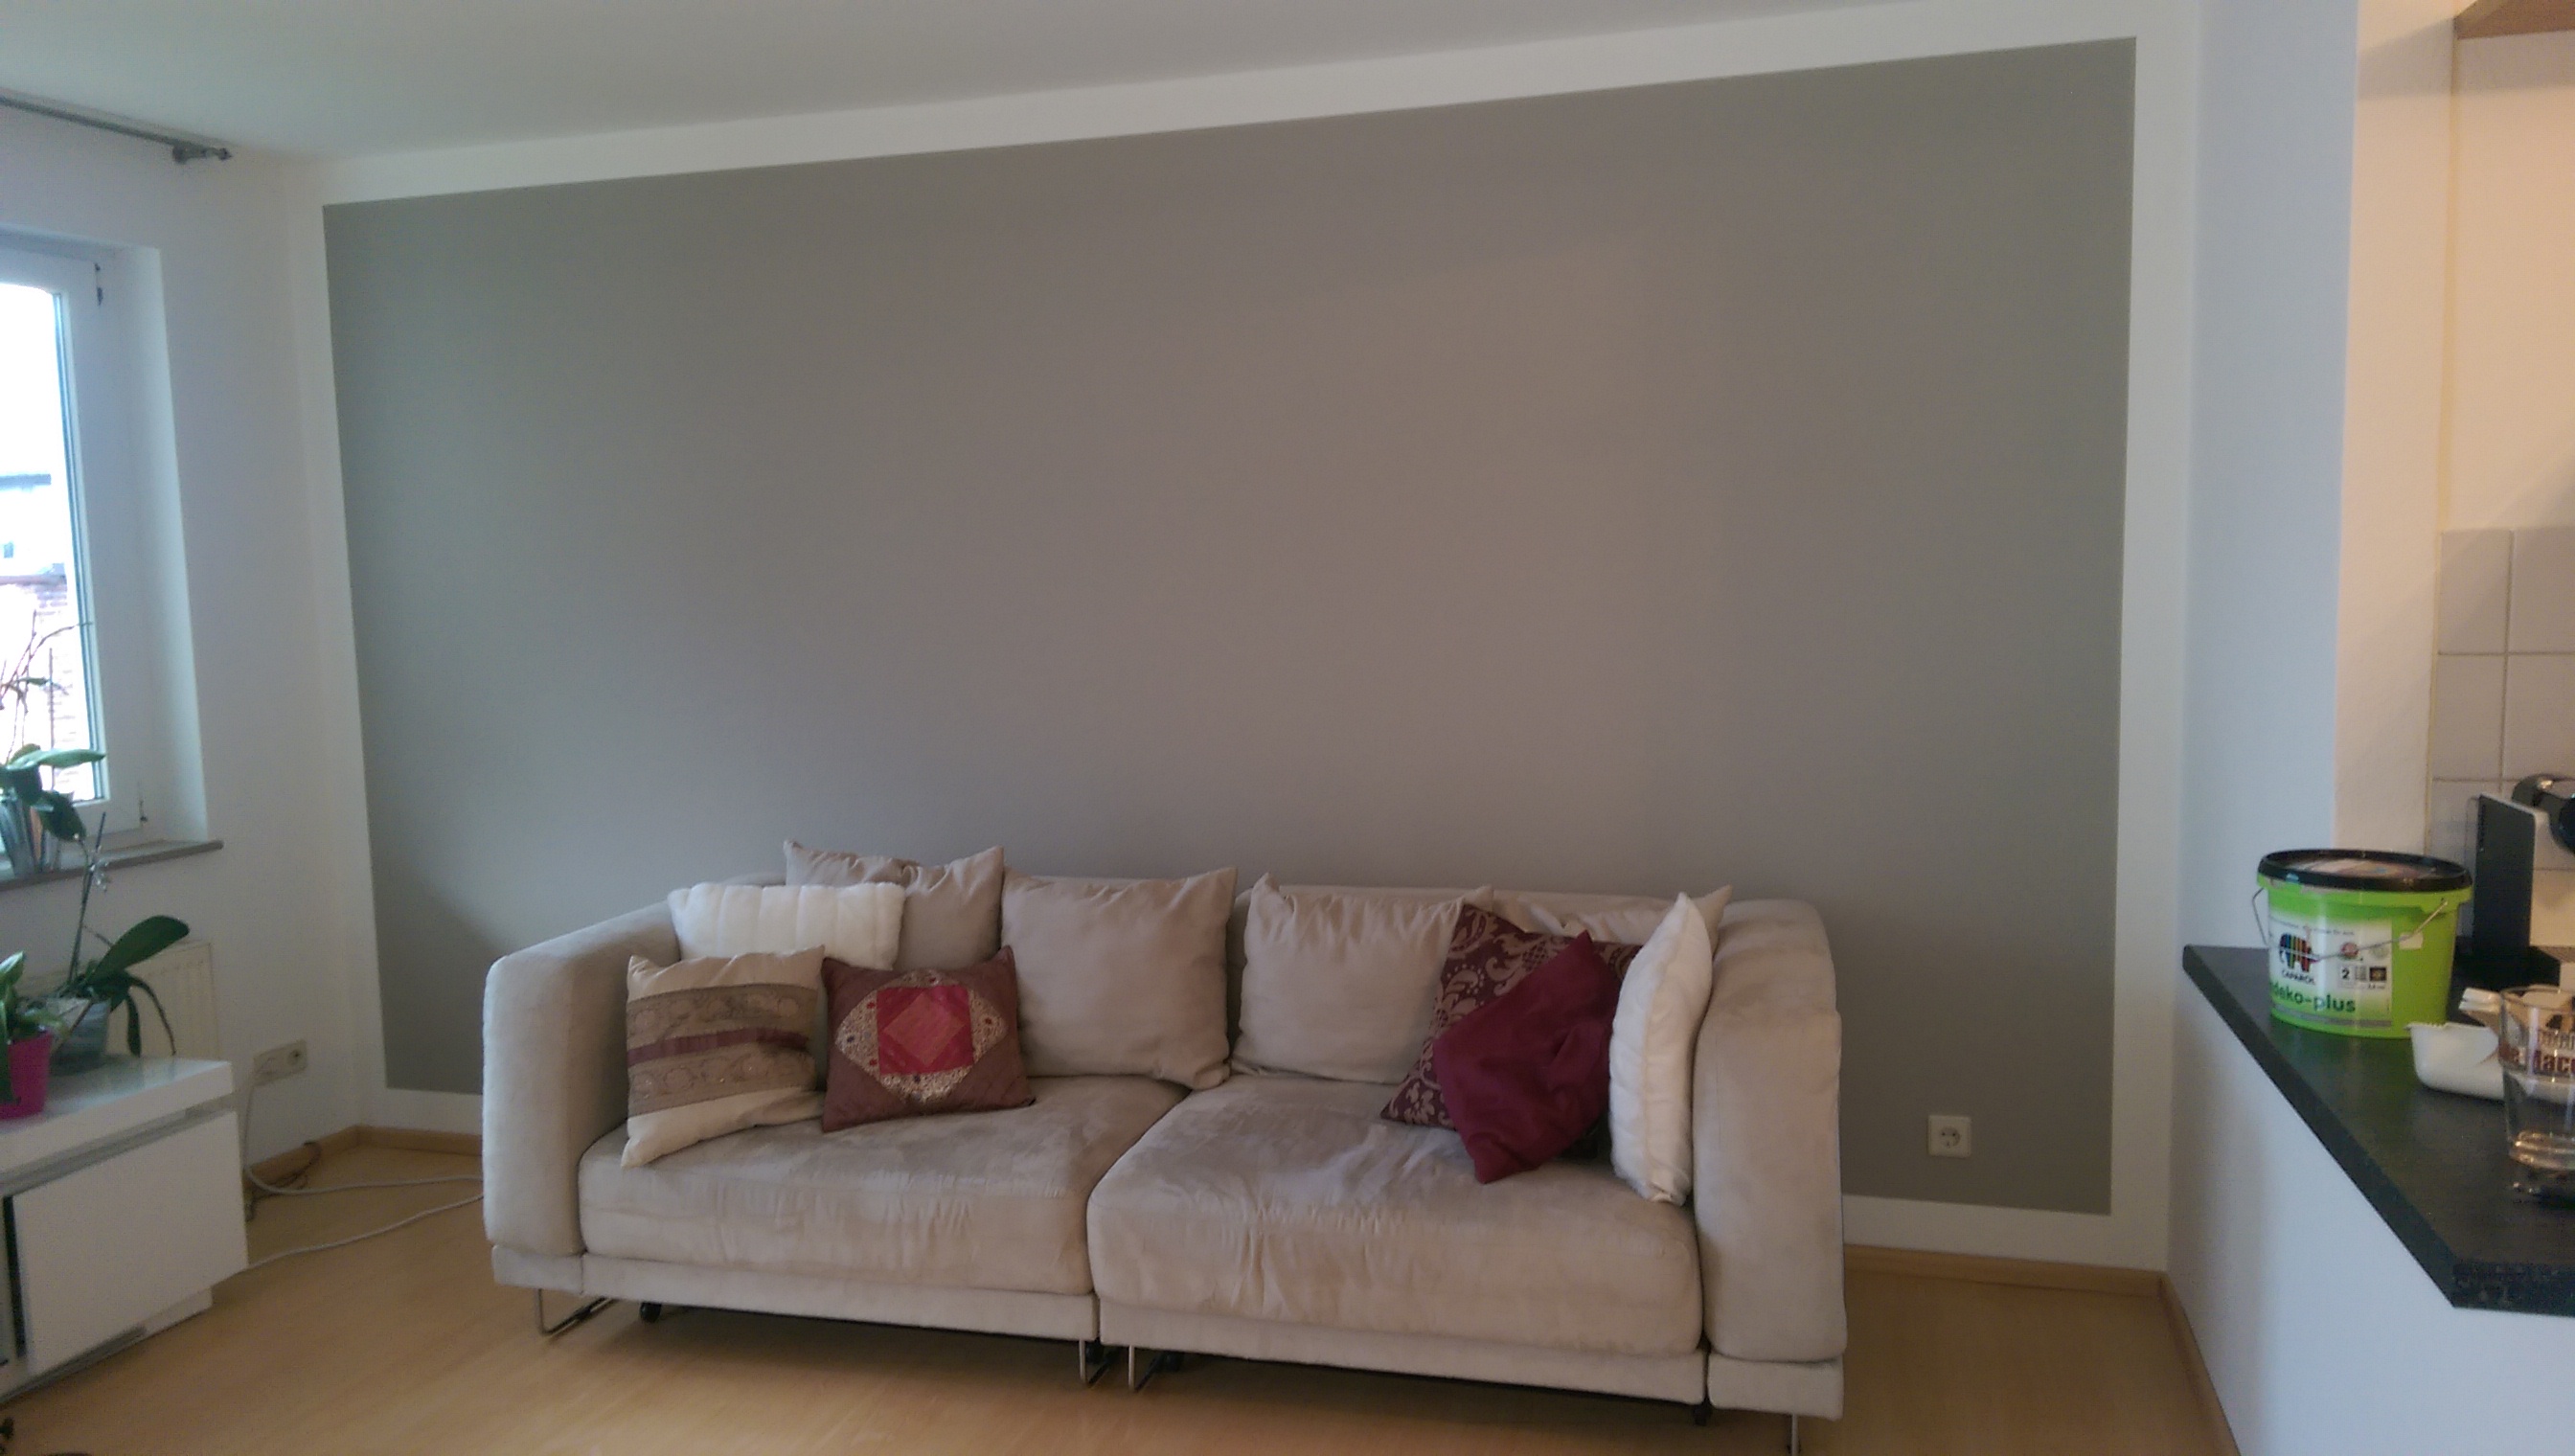 Wohnzimmer Farbe Grau Jtleighcom  Hausgestaltung Ideen - Wohnzimmer Einrichten Wei Grau